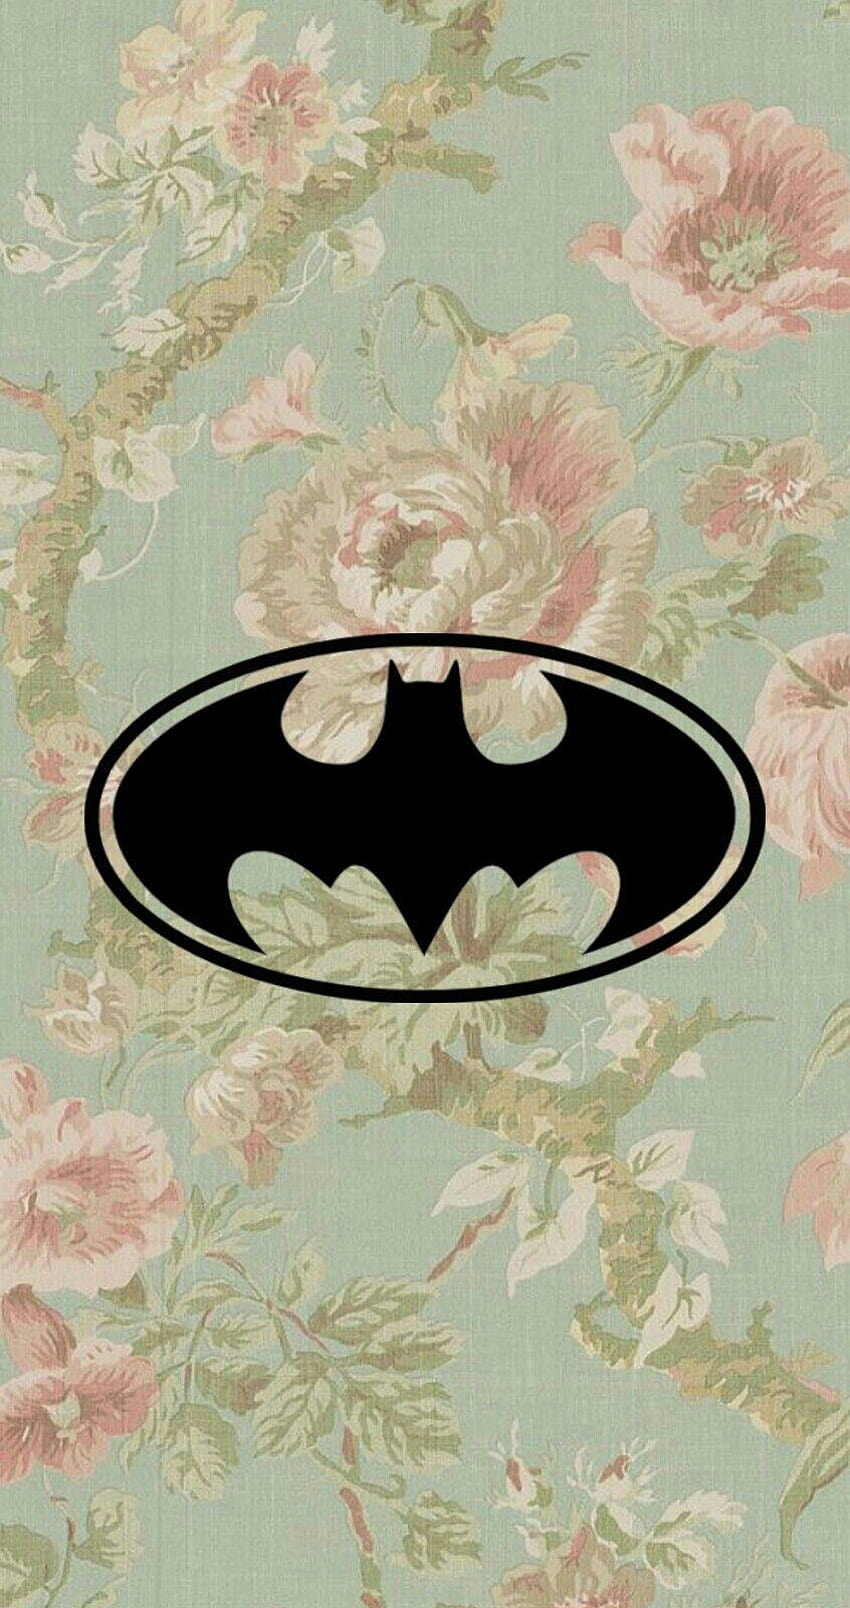 私はバットマンです！ Heuheu, um que eu editei com a logo do Batman, im batman HD電話の壁紙